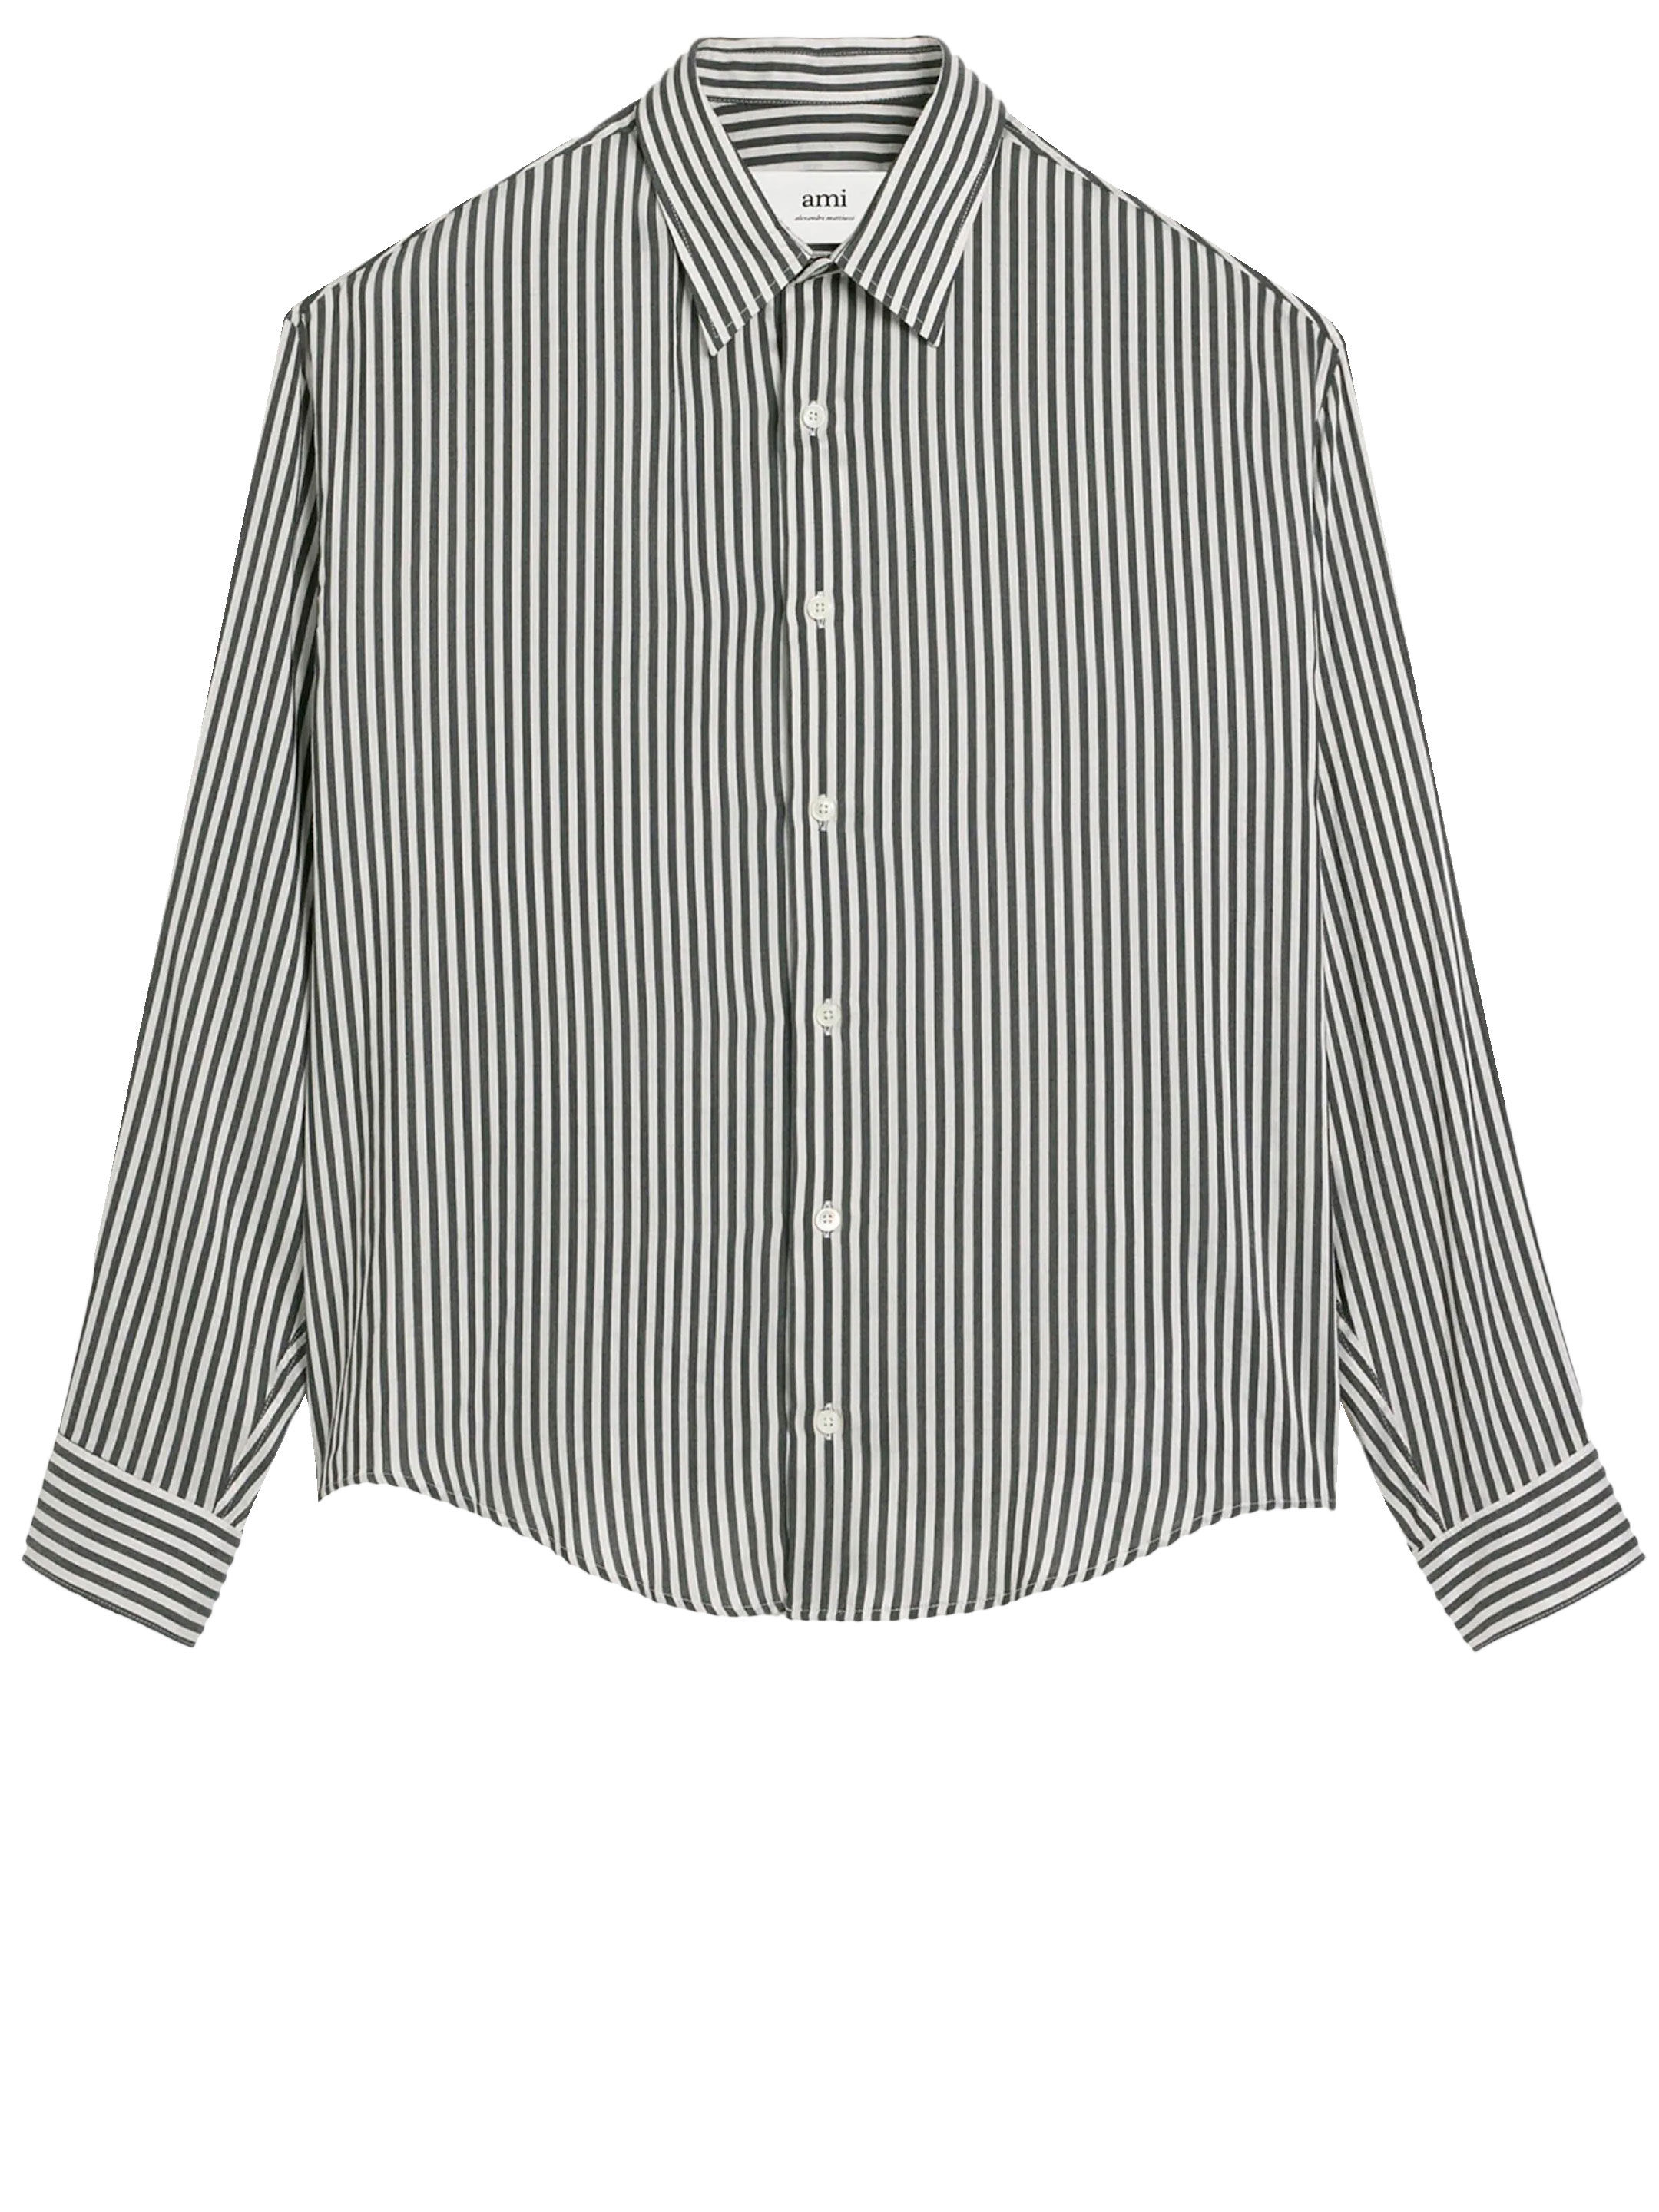 Рубашка Ami Paris Striped, белый рубашка в полоску из вискозы wayne s синий